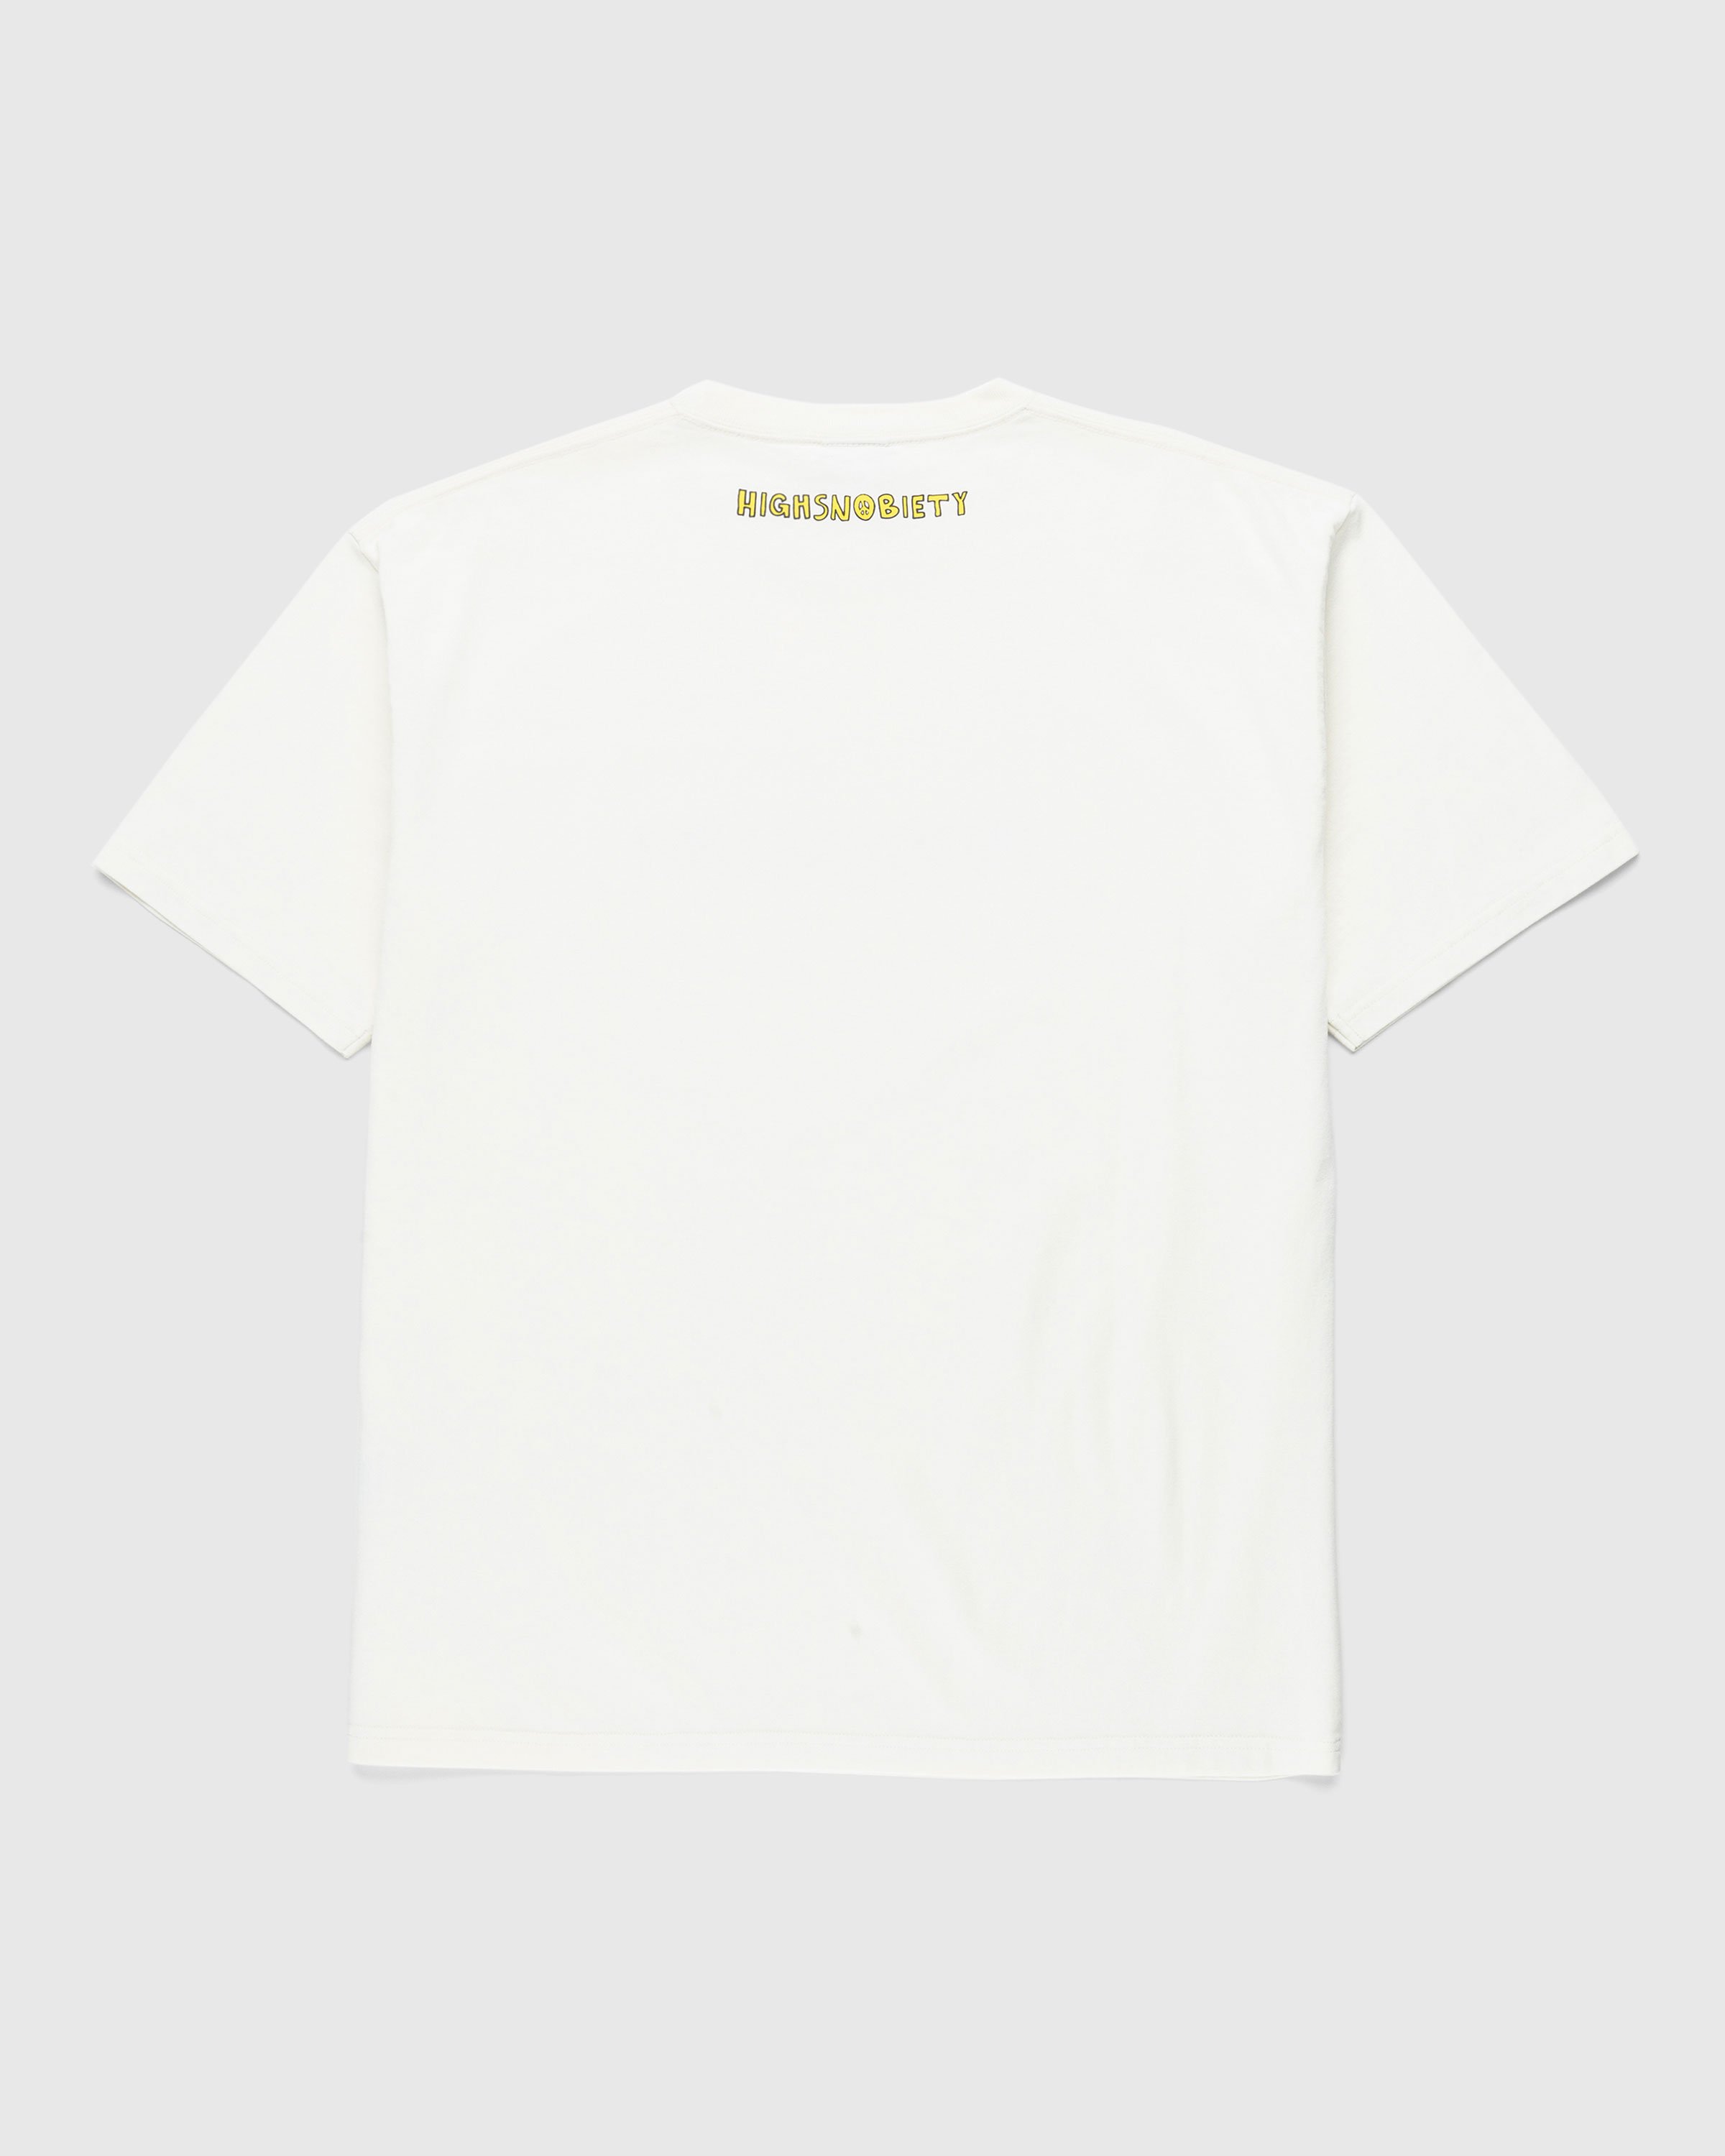 Highsnobiety x De La Soul - Off White T-Shirt - Clothing - Beige - Image 2